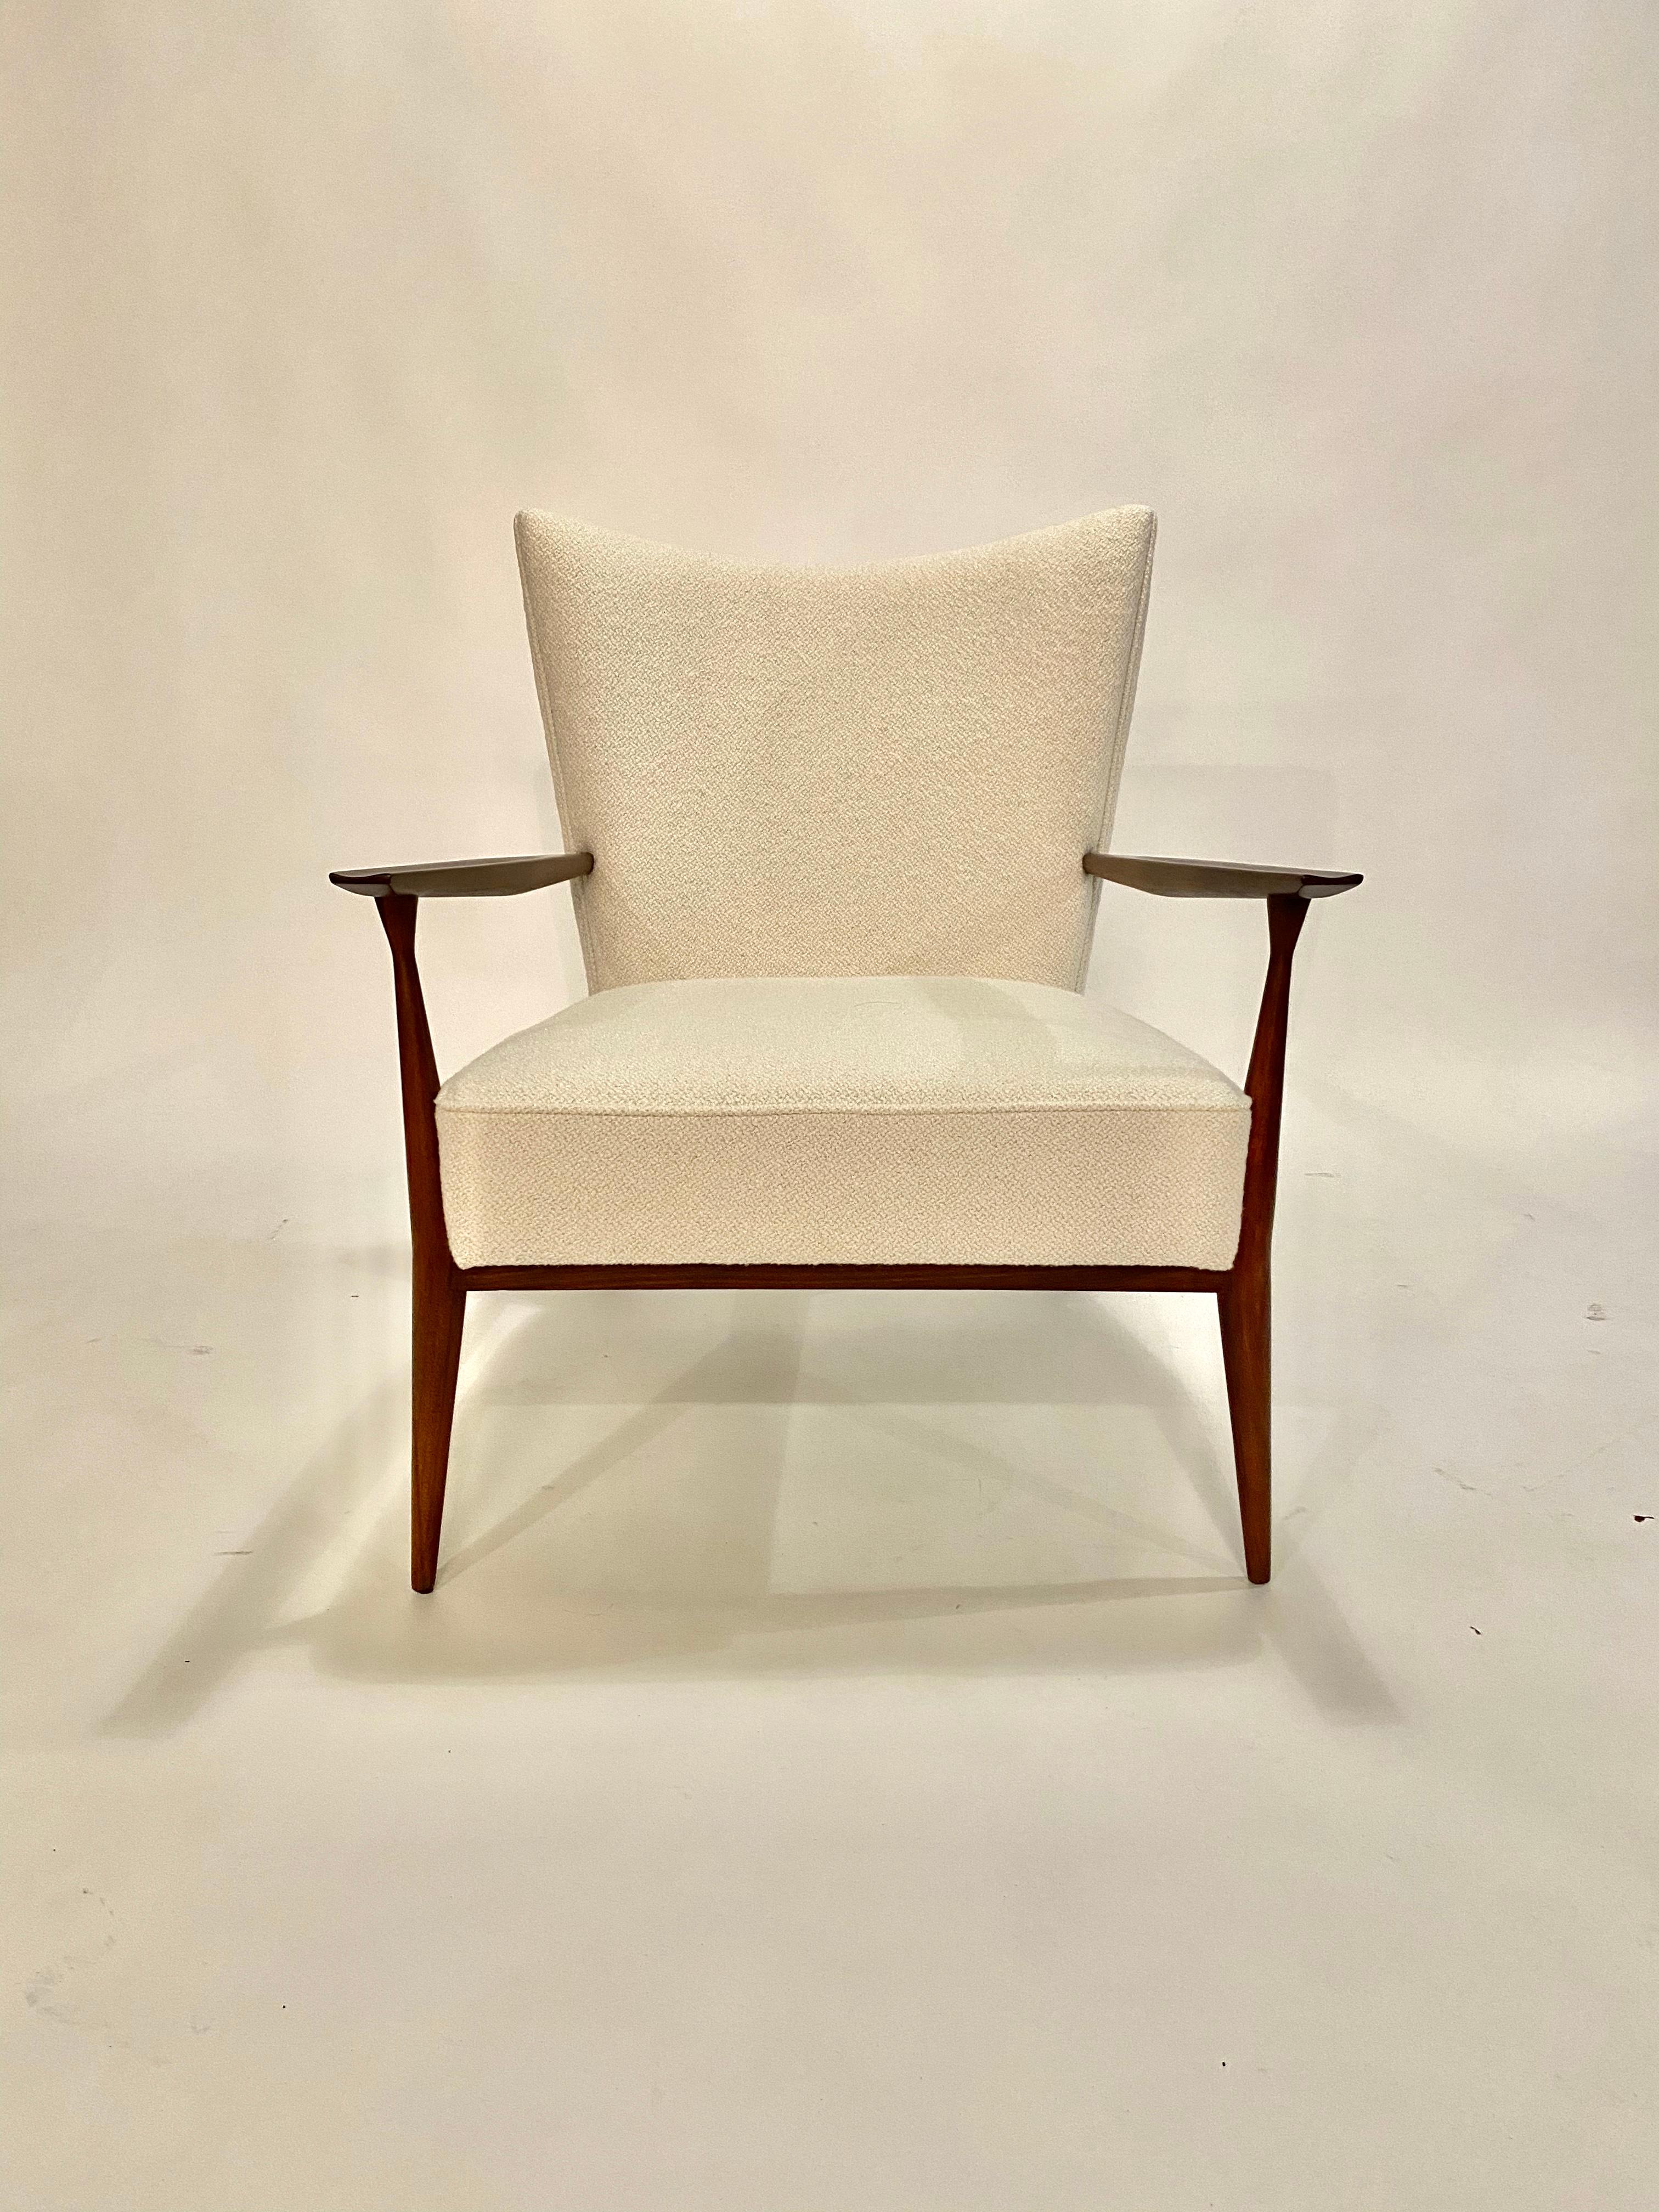 Paul McCobb-Sessel aus den 1950er Jahren aus wunderschön restauriertem Nussbaumholz, neu gepolstert mit italienischem Elfenbein-Bouclé. Dieser Stuhl ist aus jedem Blickwinkel atemberaubend.